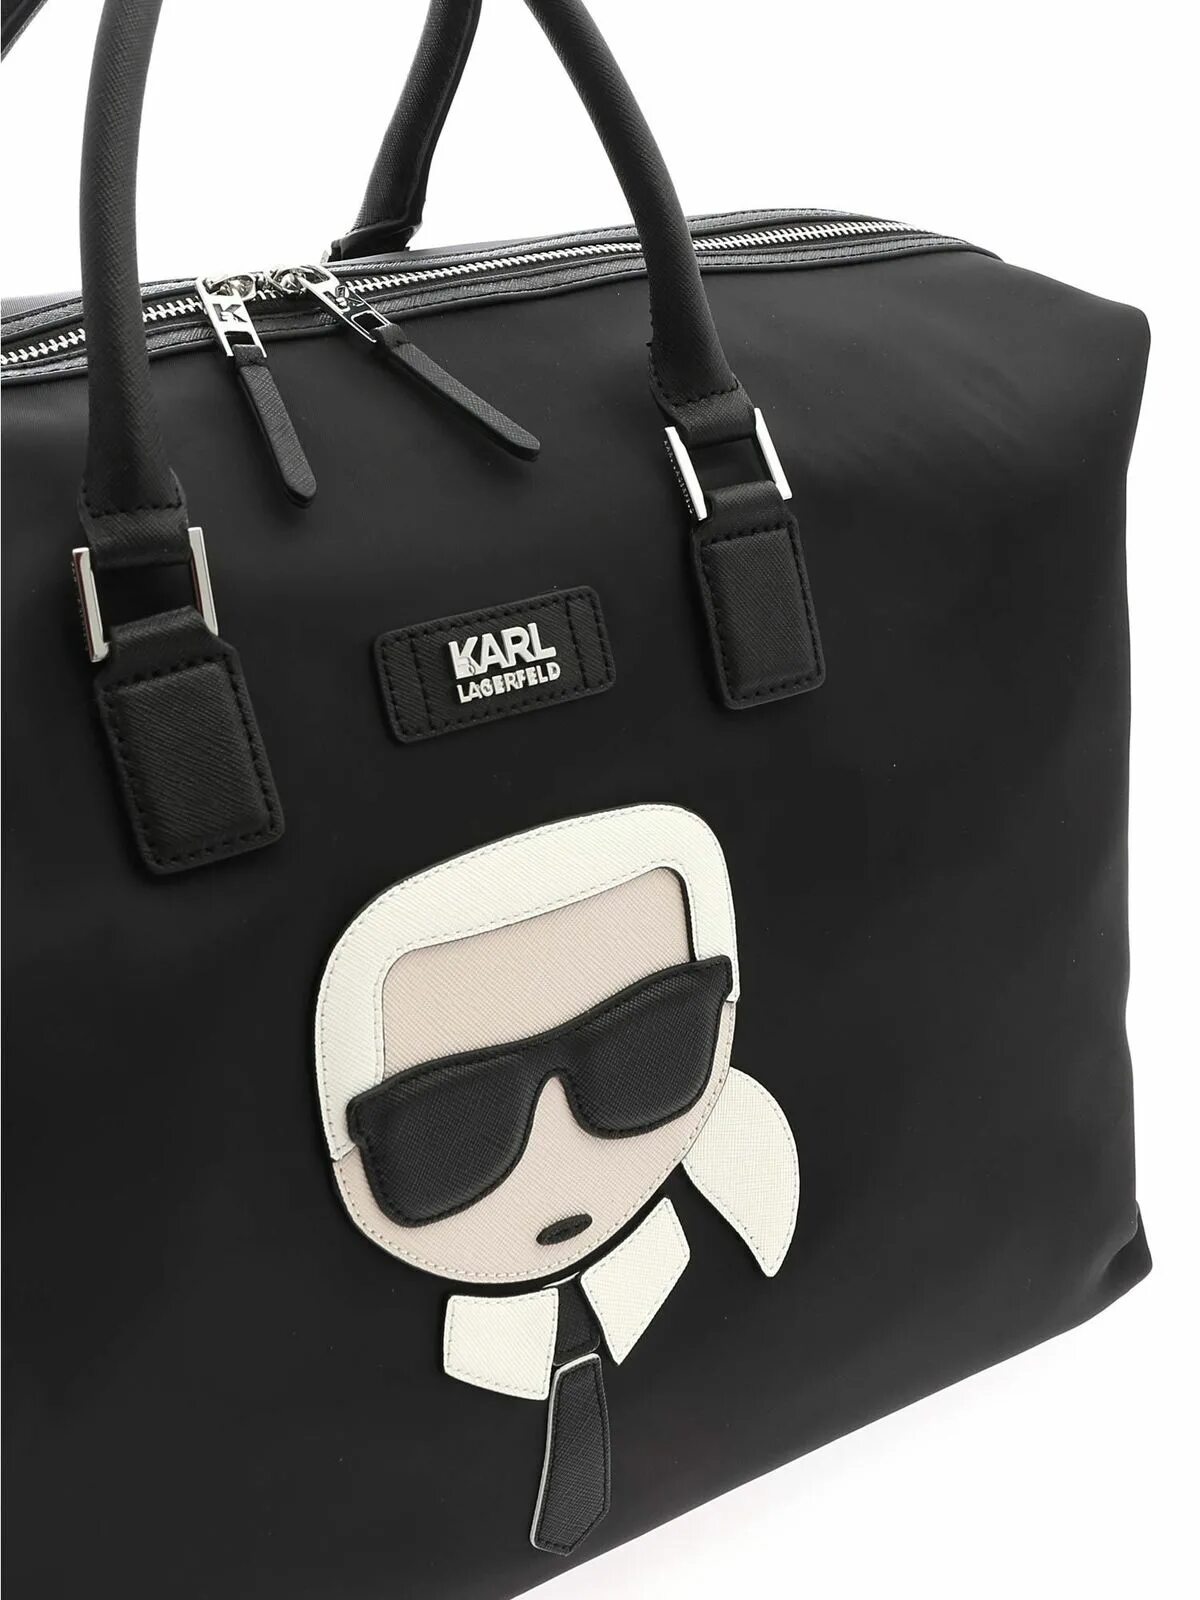 Купить сумку лагерфельд оригинал. Сумка Karl Lagerfeld ikonik черная. Сумка дорожная Karl Lagerfeld. Сумка для спорта Karl Lagerfeld.